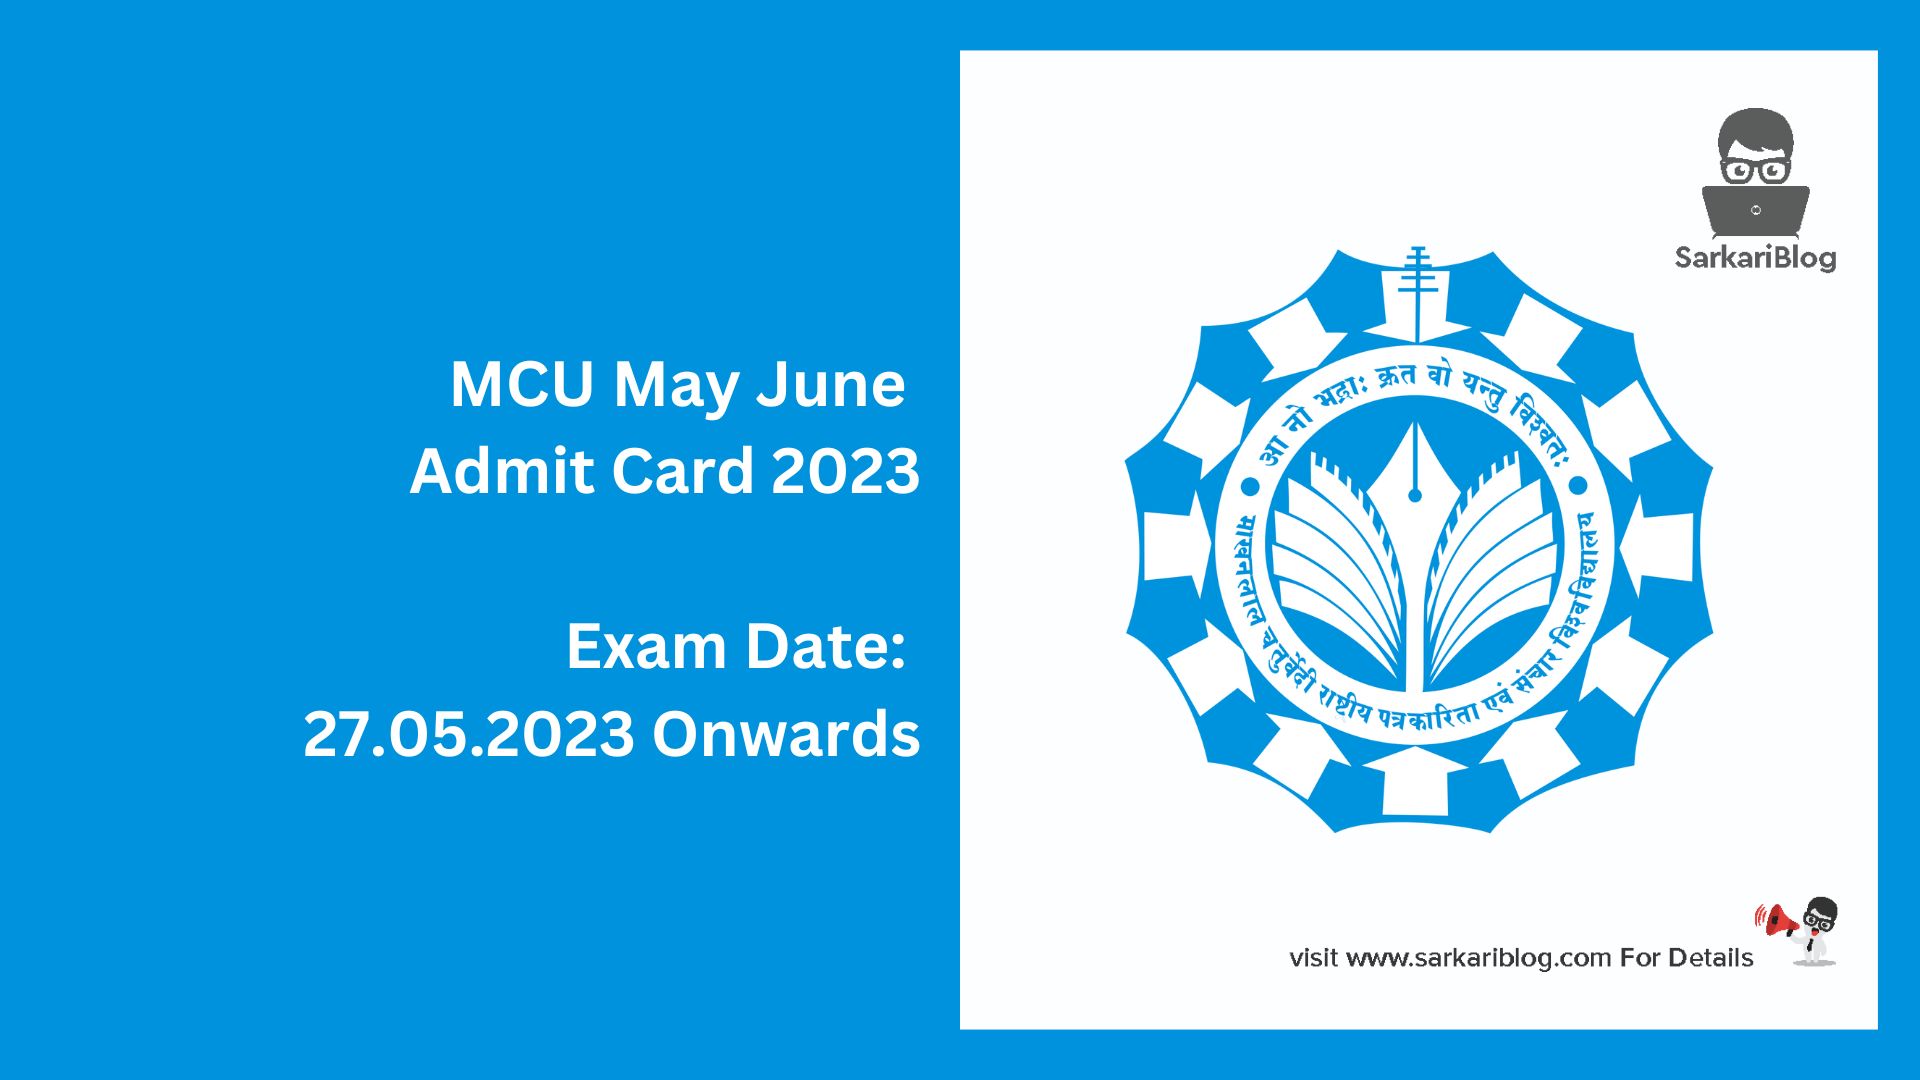 MCU May June Admit Card 2023